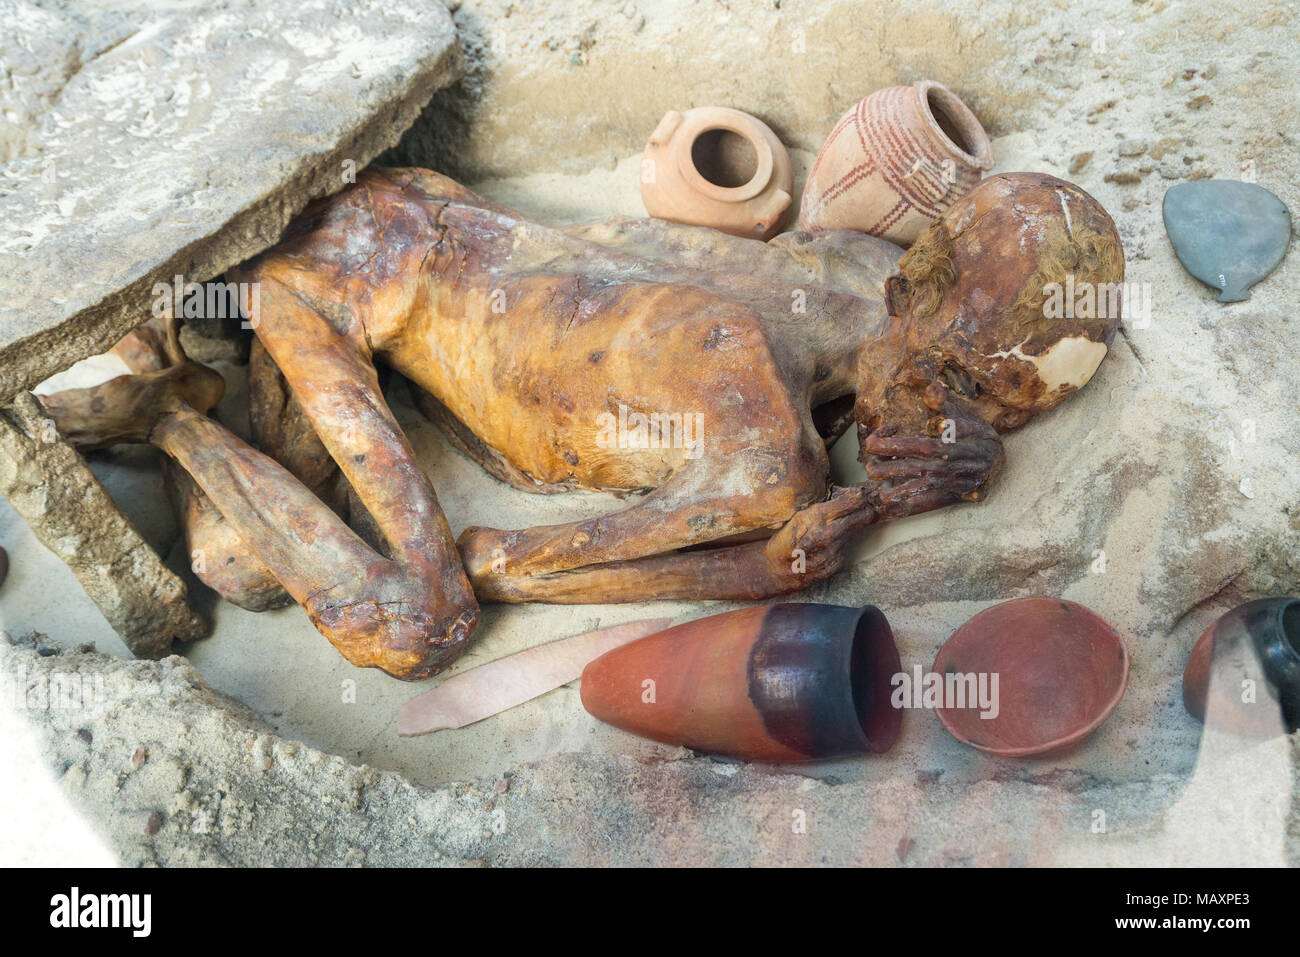 Gebelein uomo, una mummia naturale dal periodo Predynastic sepolto intorno 3500 BC, il British Museum di Londra, Regno Unito Foto Stock